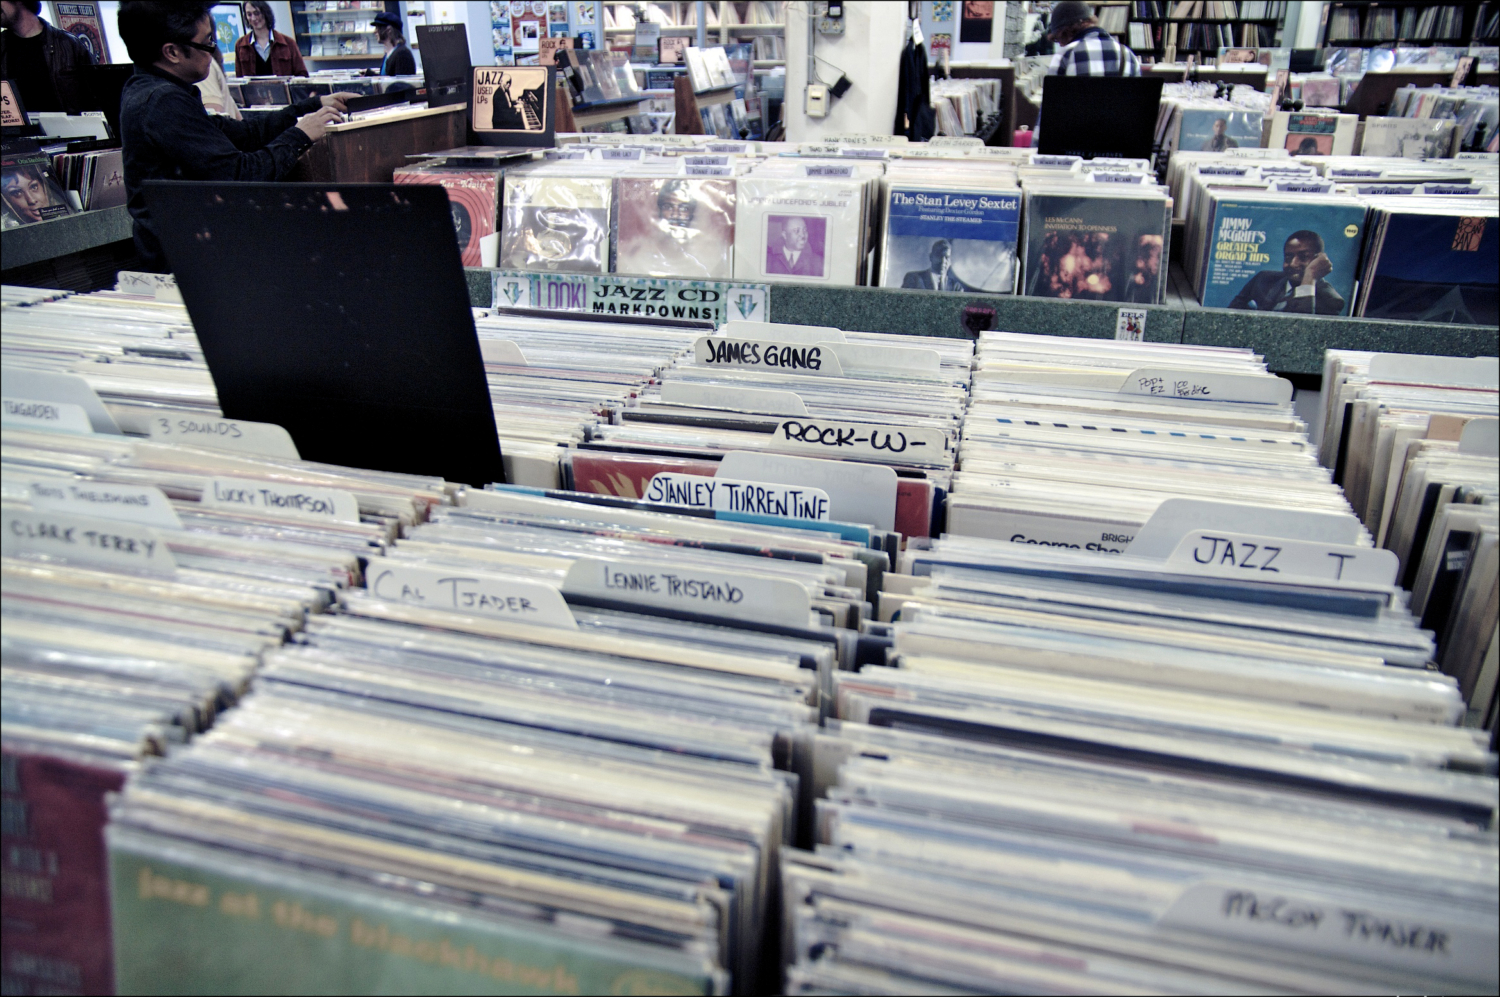 Vinyl Record Store